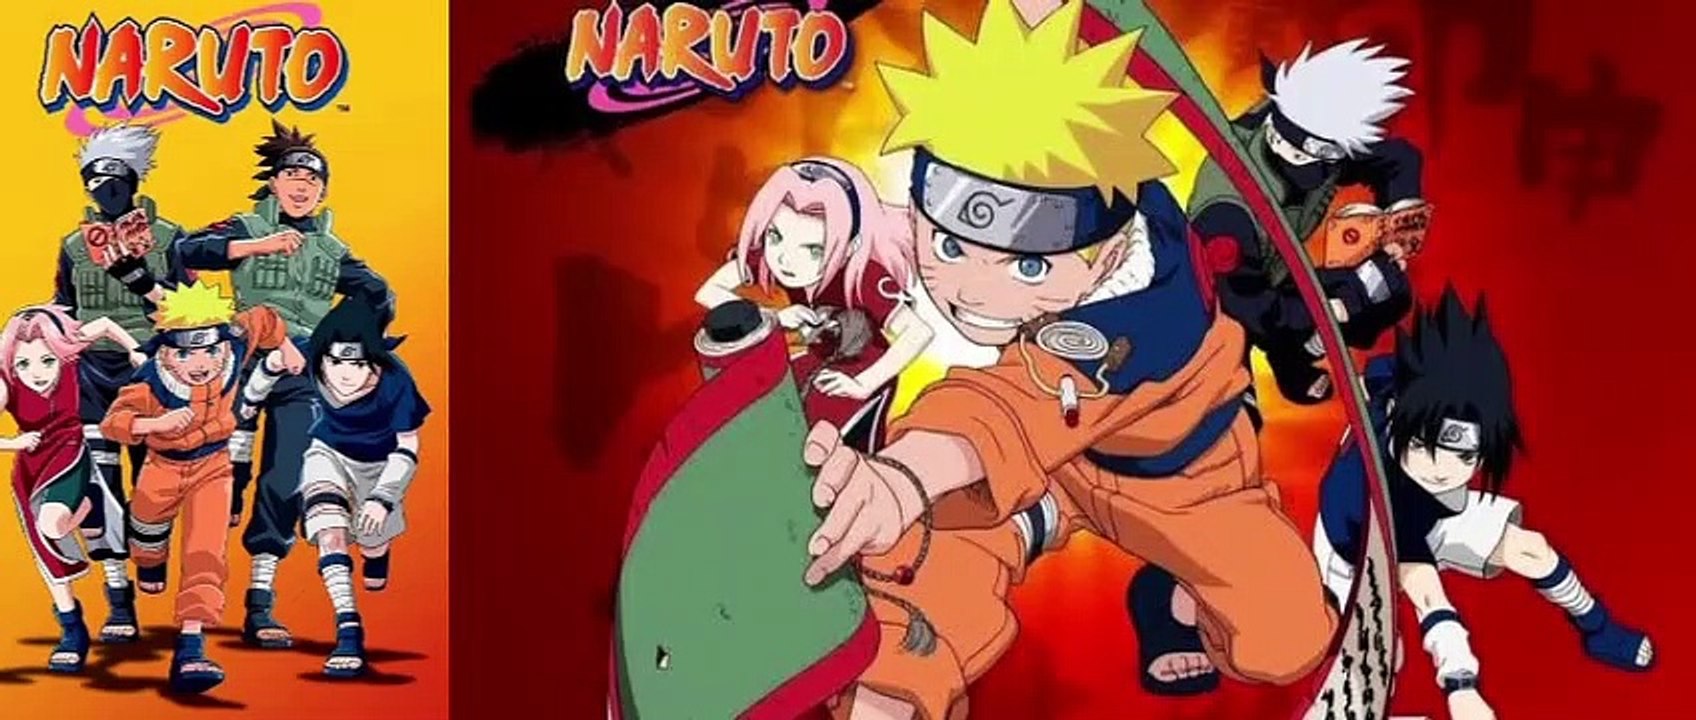 Naruto Anime Hd